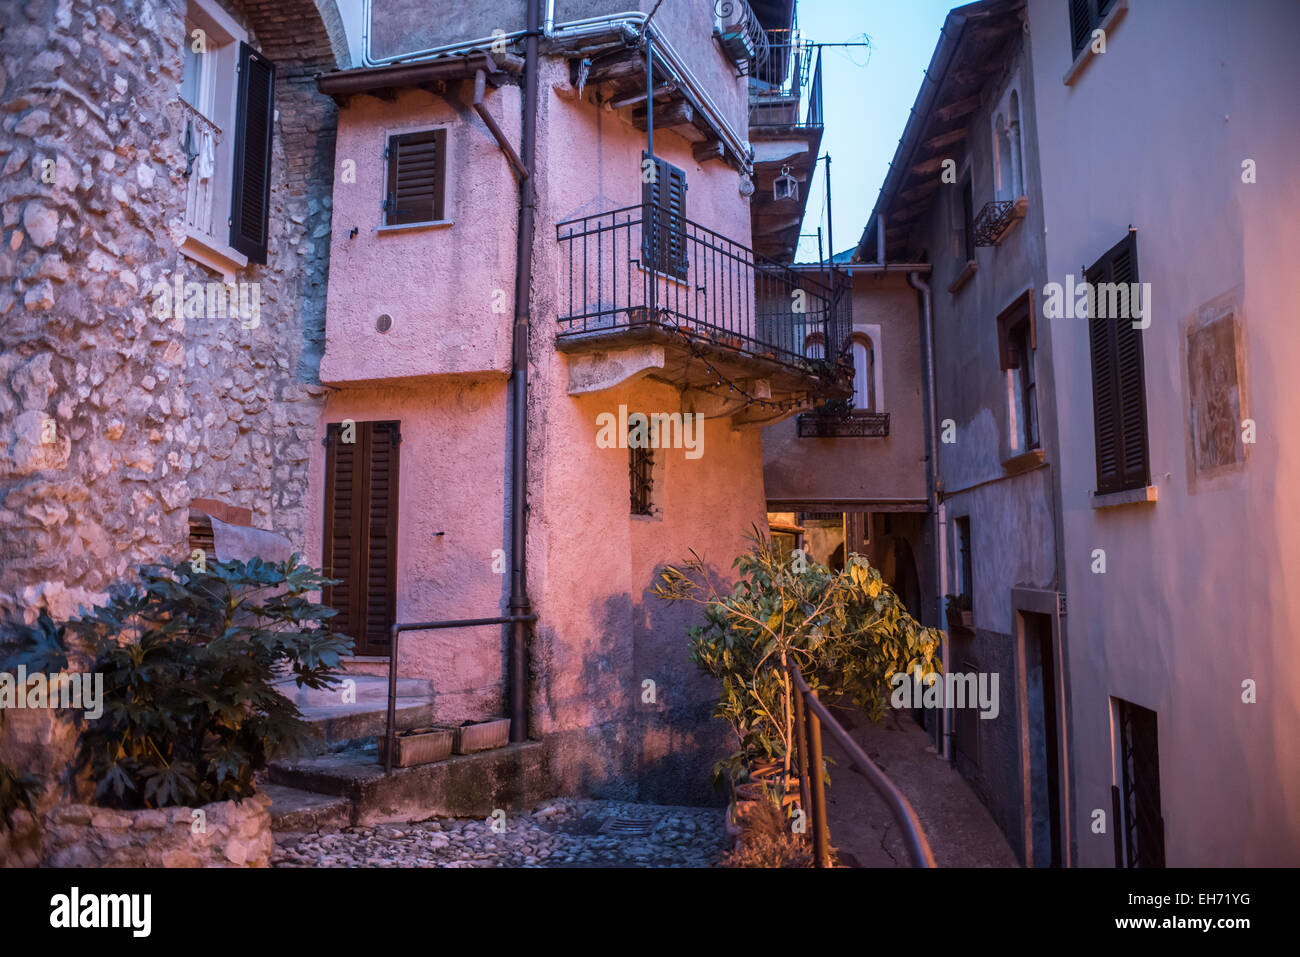 Arquitectura y calles estrechas en Santa María del Monte de Varese, Italia al atardecer Foto de stock